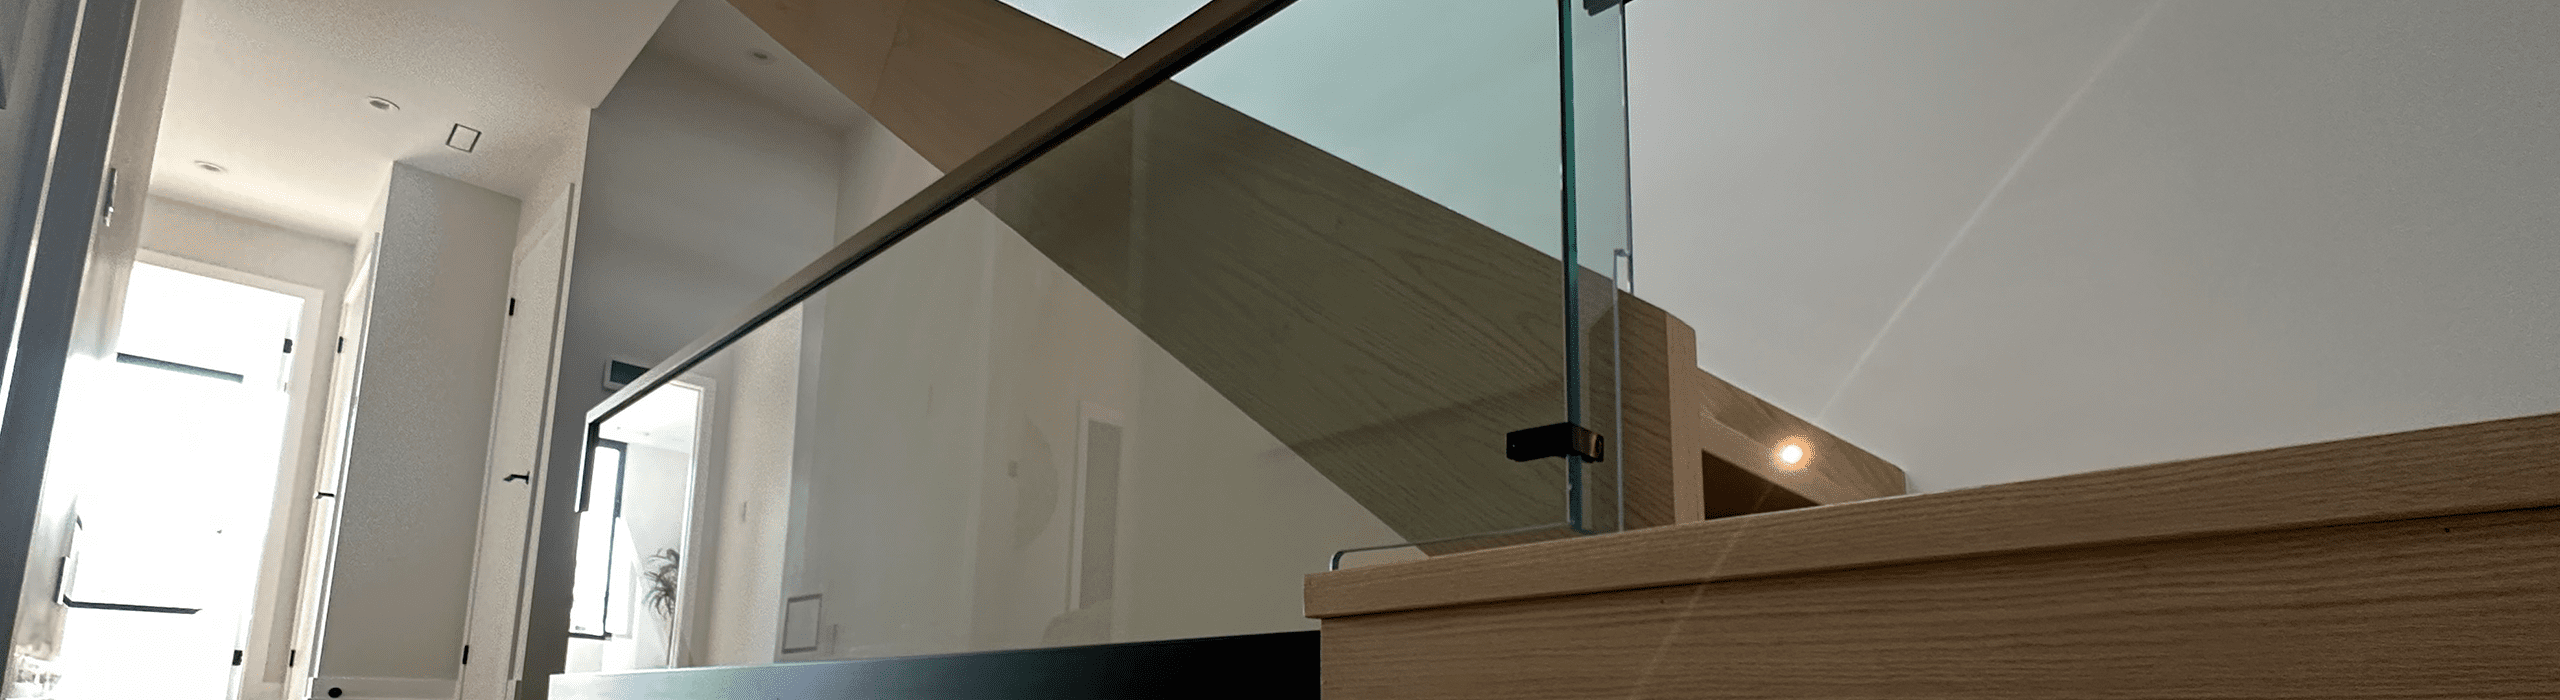 glass-balustrade